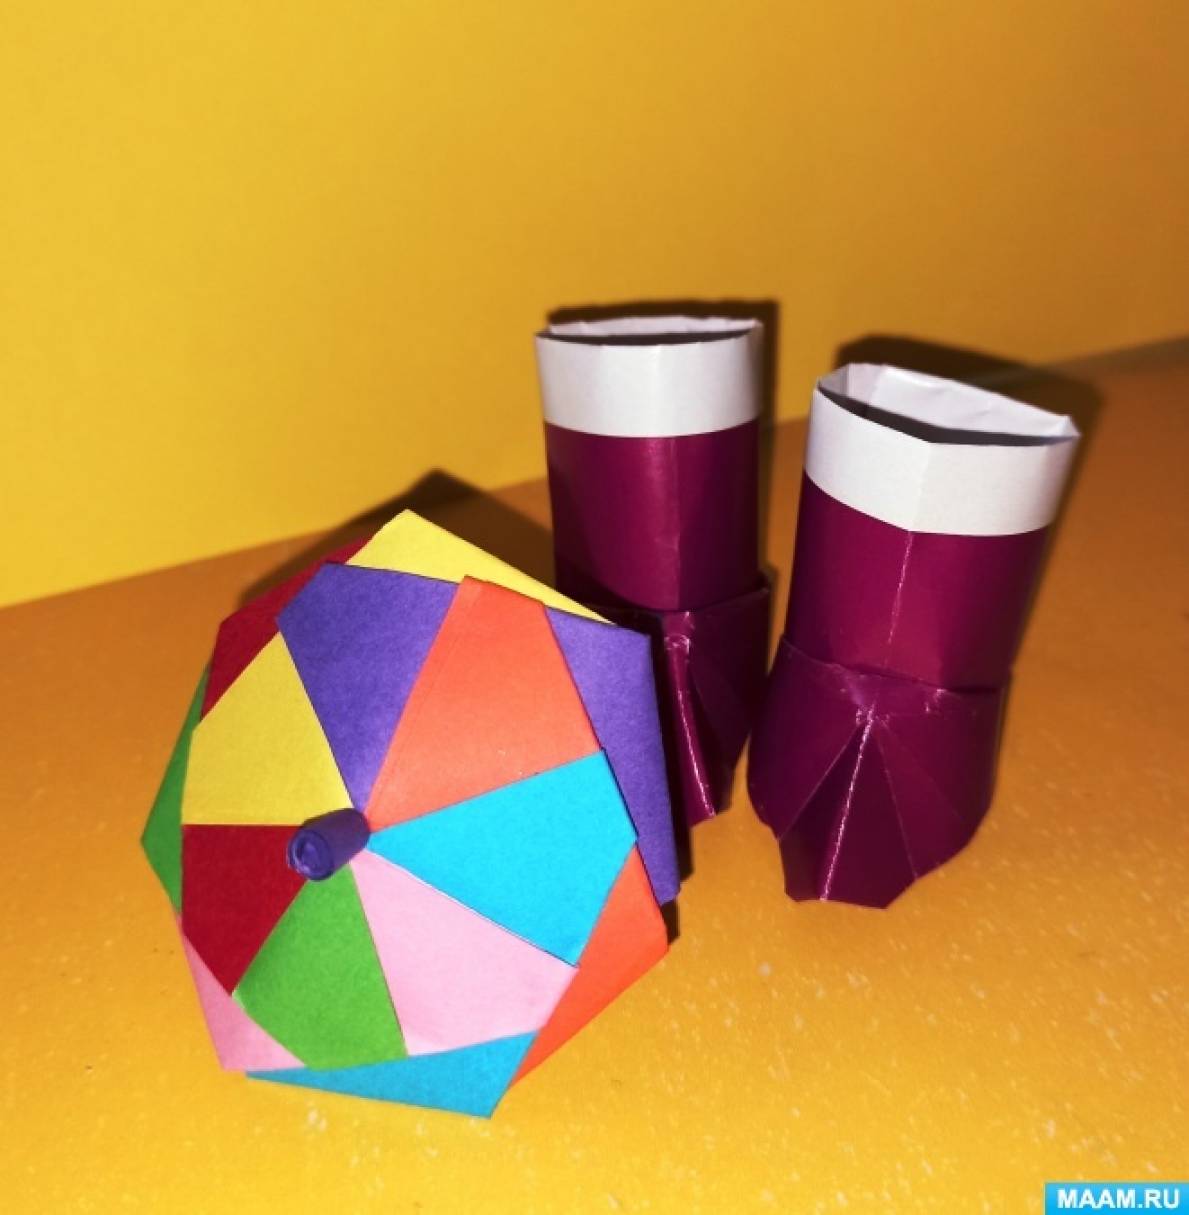 Зонтик оригами из бумаги: пошаговая инструкция